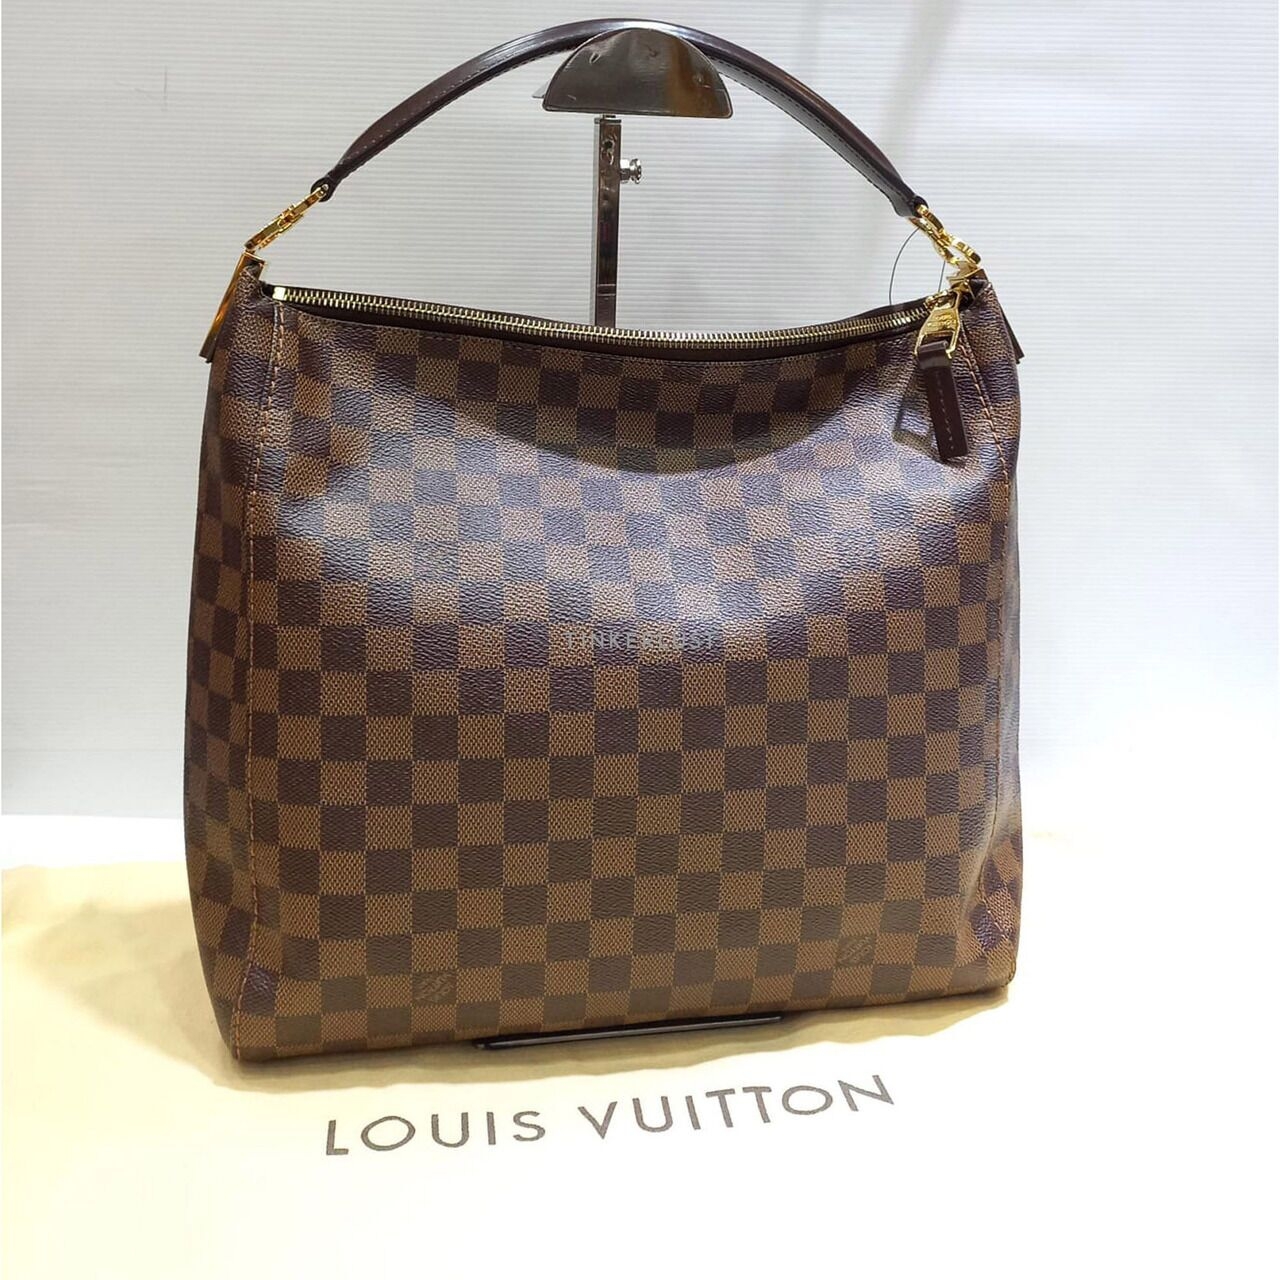 Louis Vuitton Portobelo PM Damier 2013 Handbag